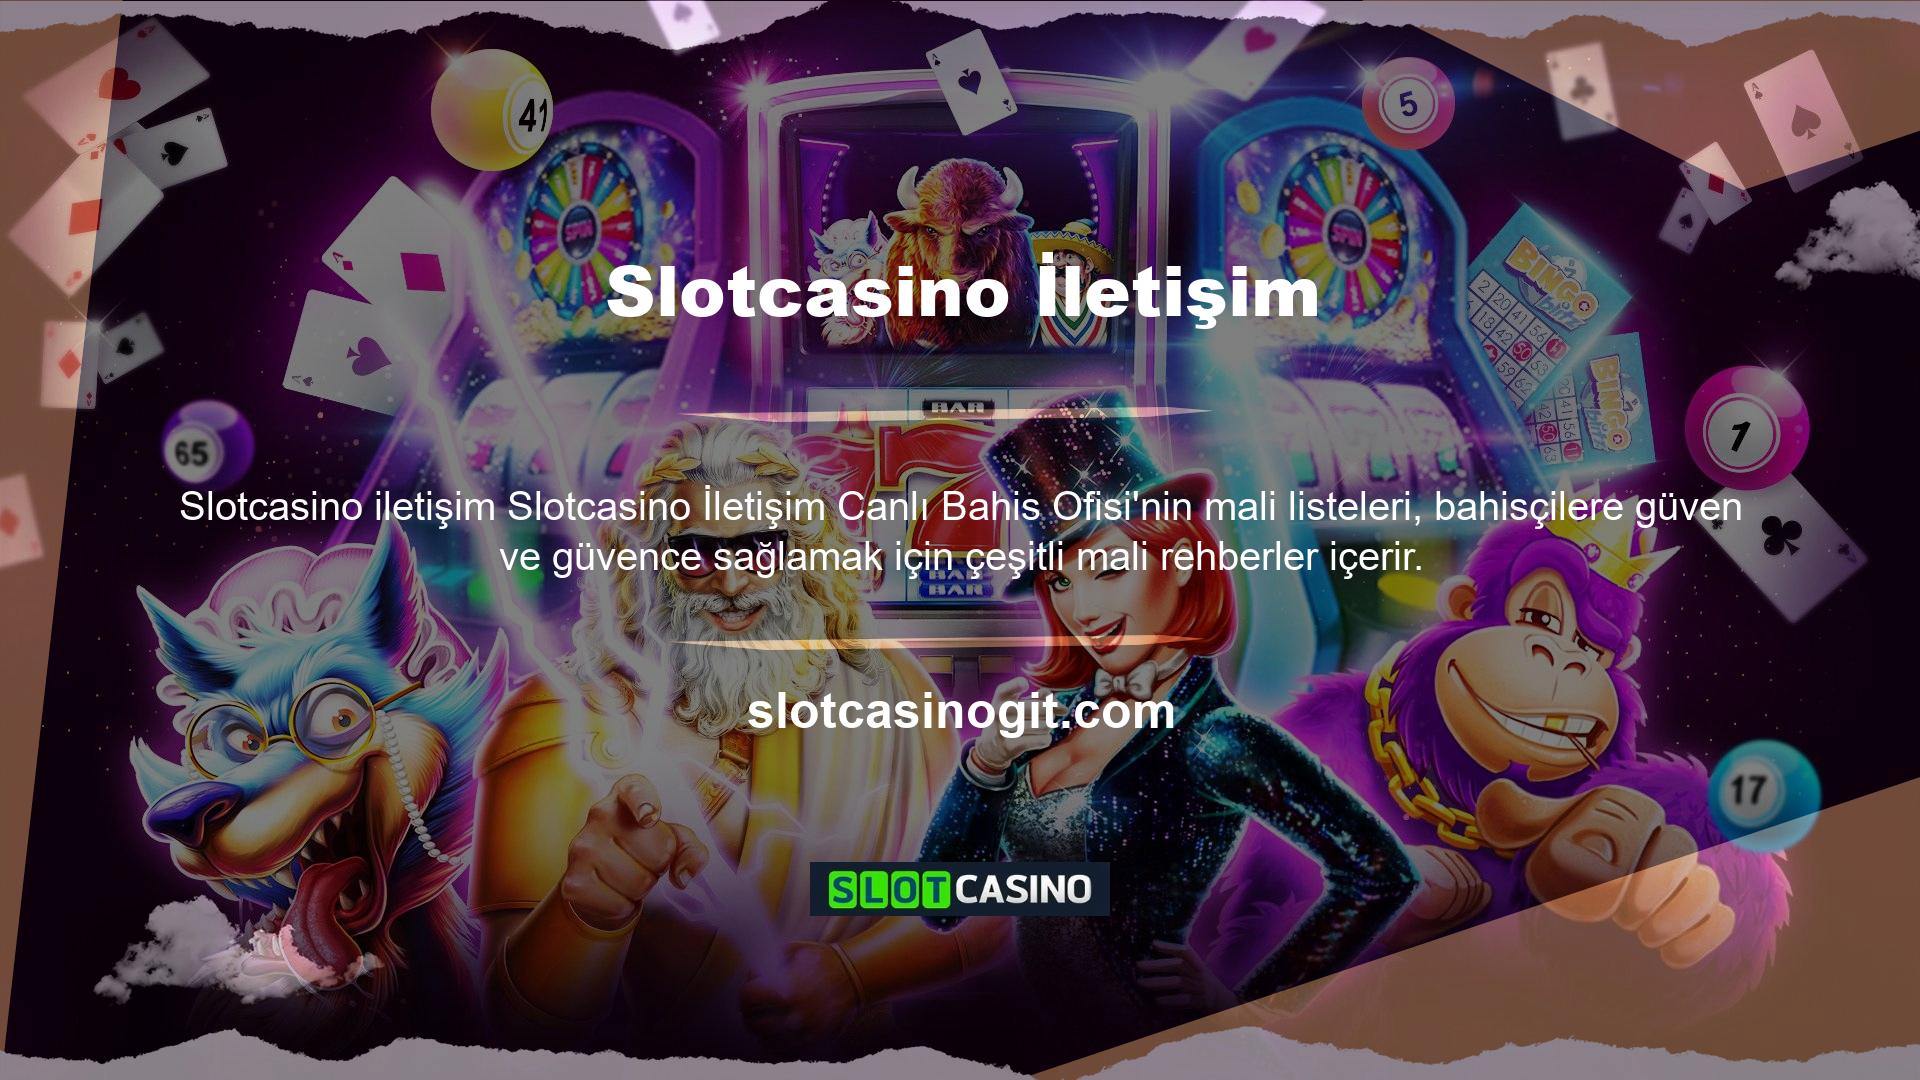 Site, Slotcasino para yatırma uygulamalarına ilişkin çeşitli tartışmalar içermektedir